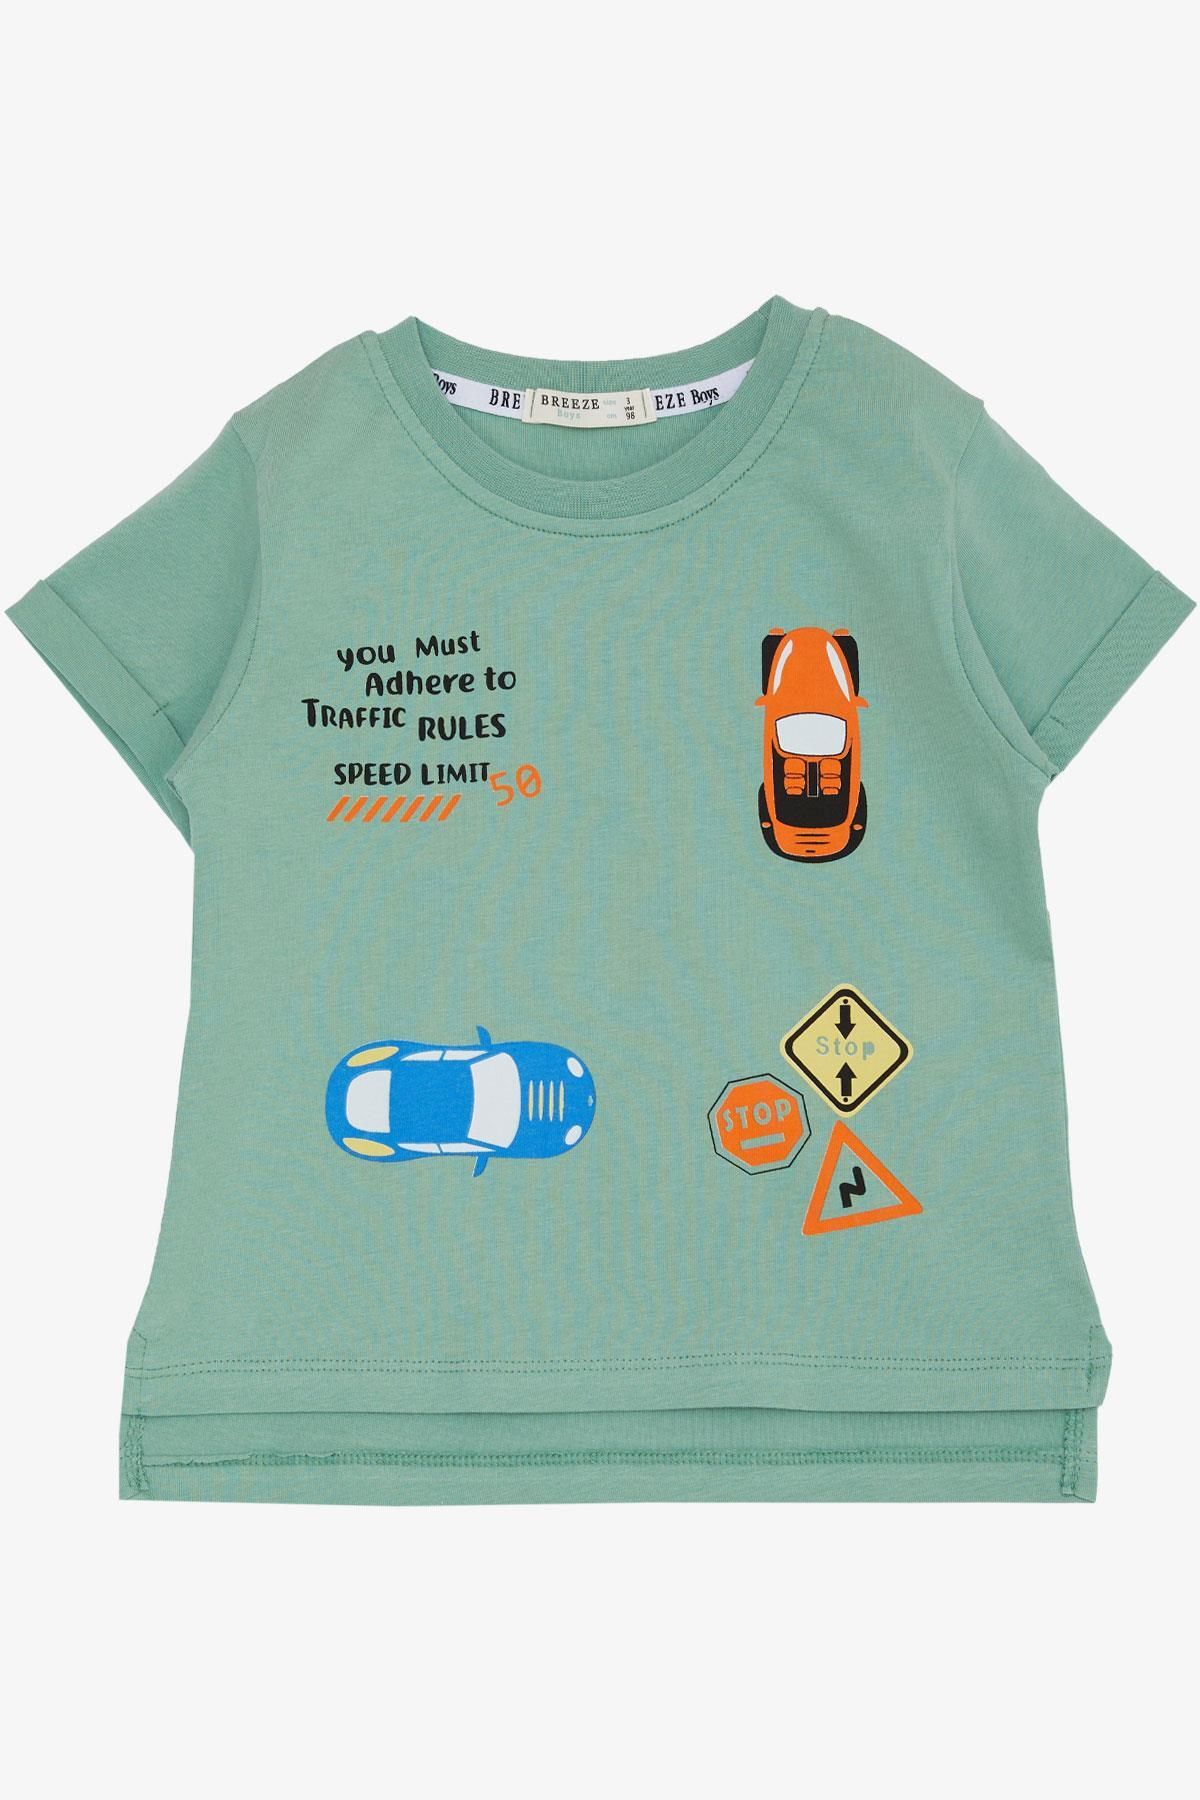 Breeze Erkek Çocuk Tişört Slogan Temalı Araba Baskılı 2-6 Yaş, Mint Yeşili